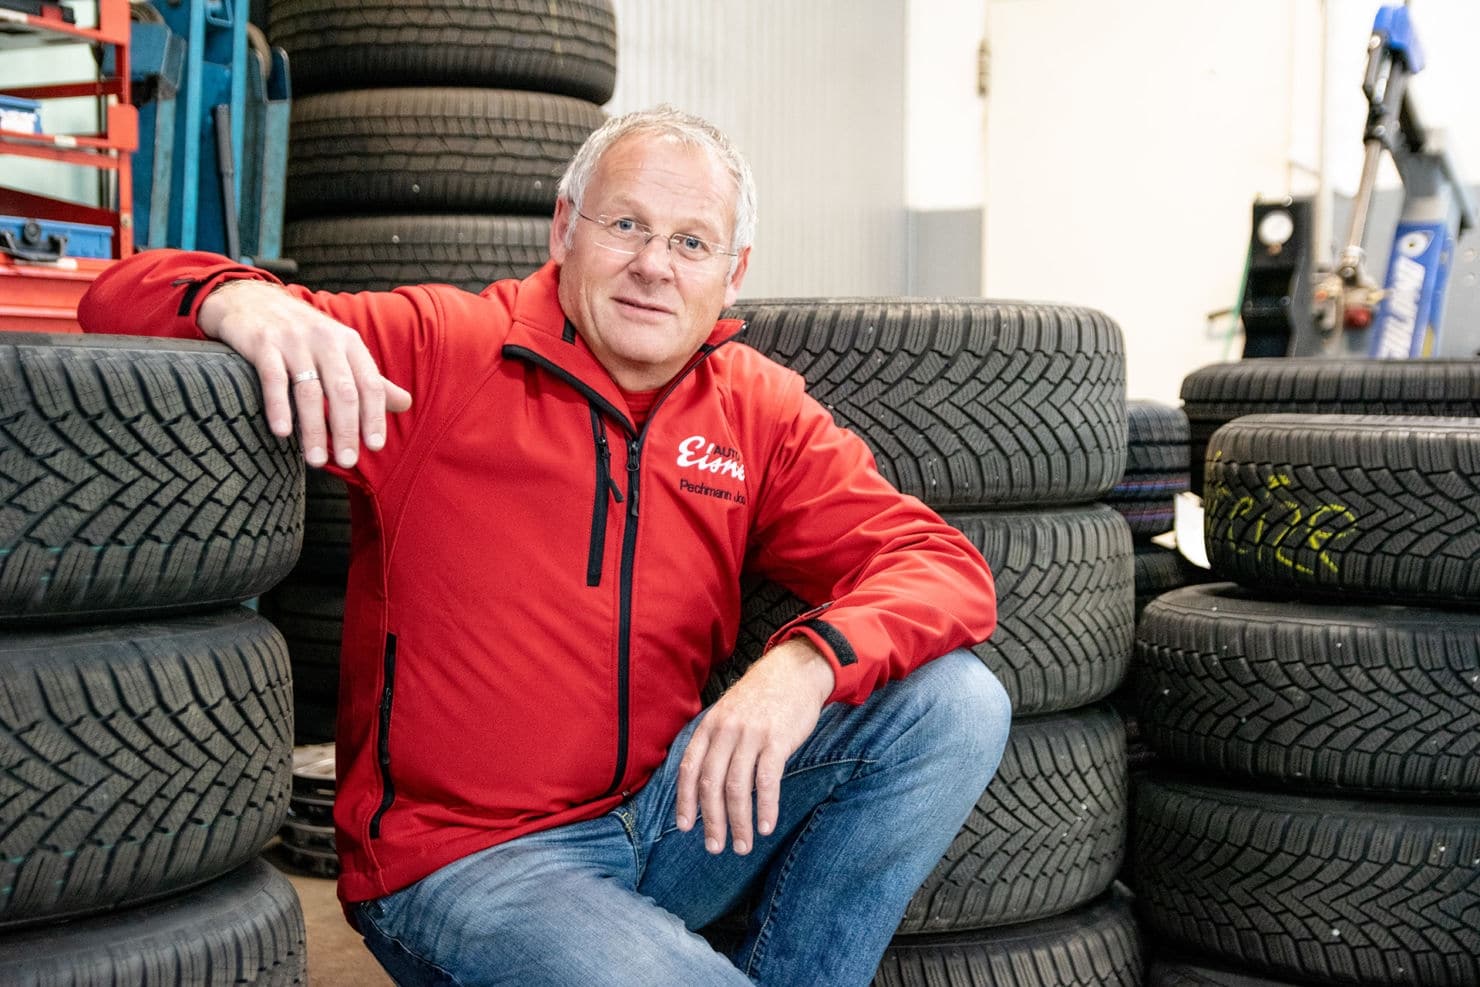 Kundendienstleiter Josef Pechmann ist nicht nur an den Wechseltagen mit Reifen eingedeckt. Ihr könnt eure Reifen hier nämlich auch bei idealen Bedingungen einlagern lassen.